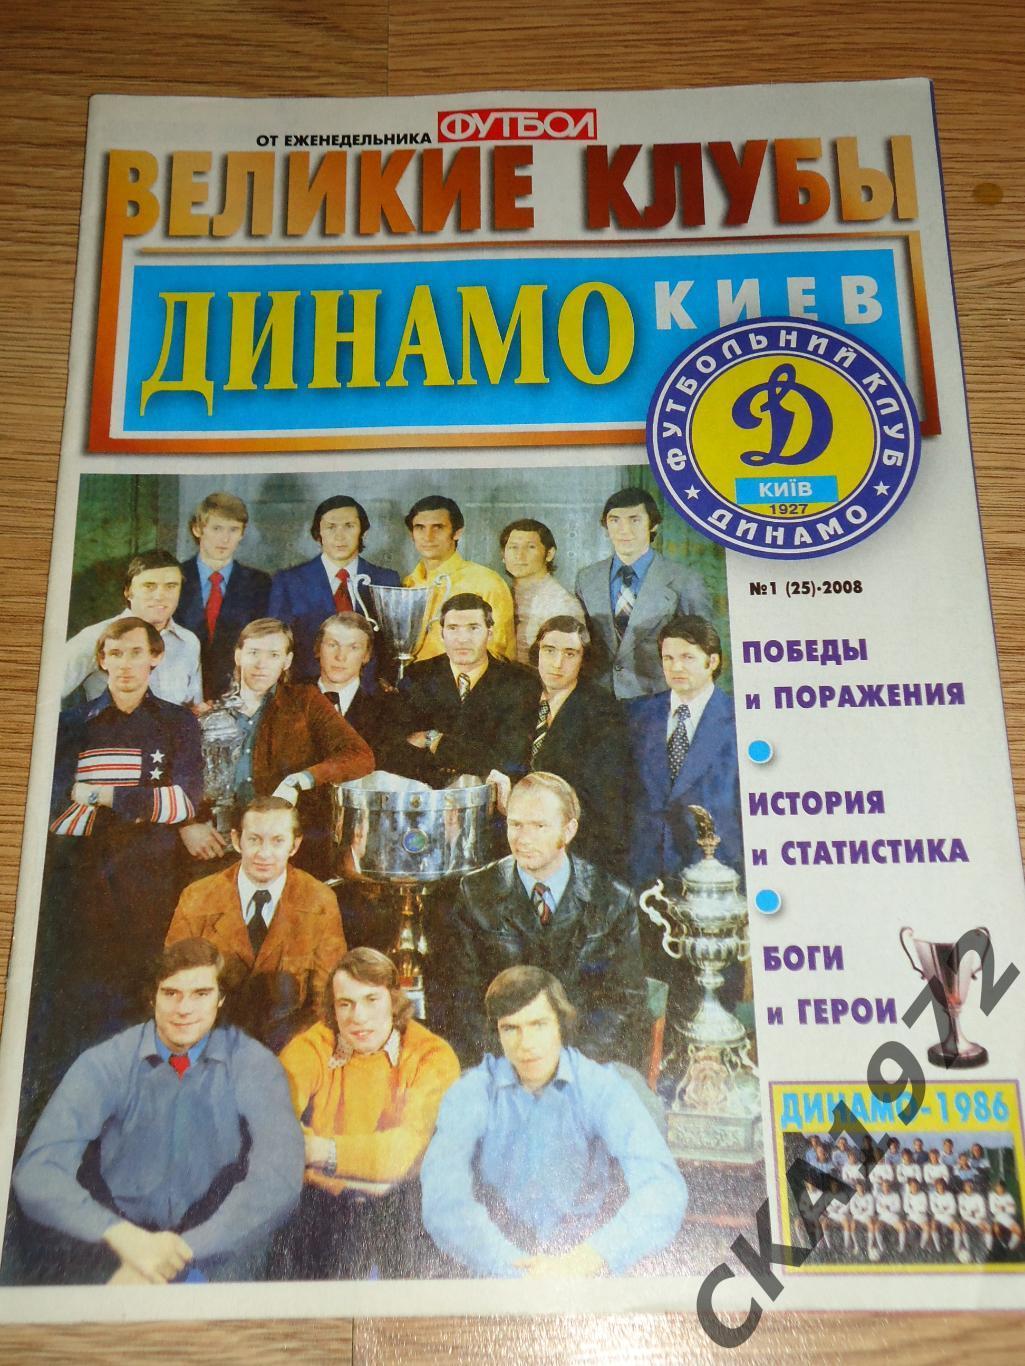 спецвыпуск газеты Футбол Великие клубы Динамо Киев Украина №1 2008 +++